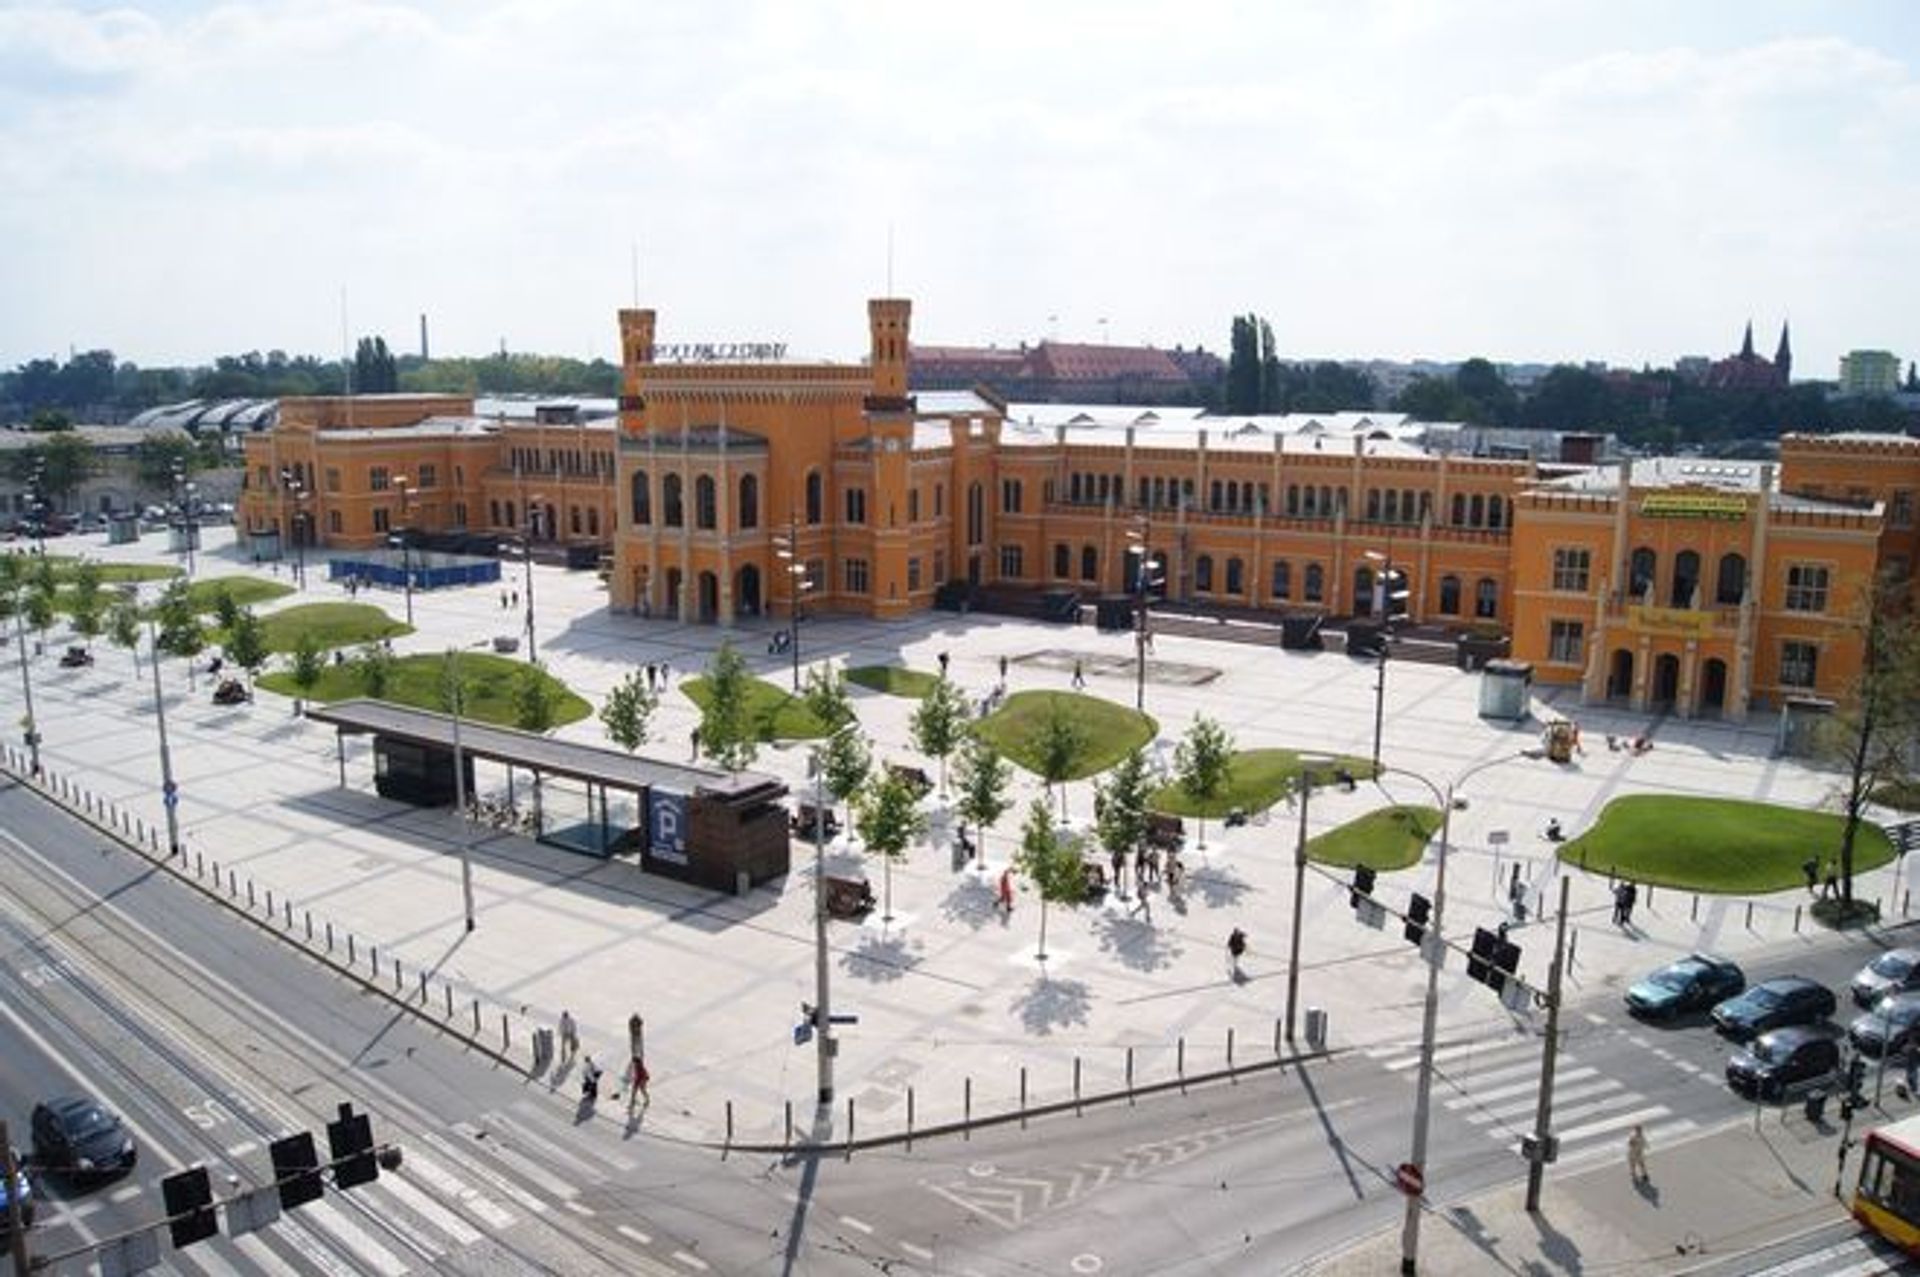  Plac przed Dworcem Głównym w finale prestiżowego konkursu architektonicznego